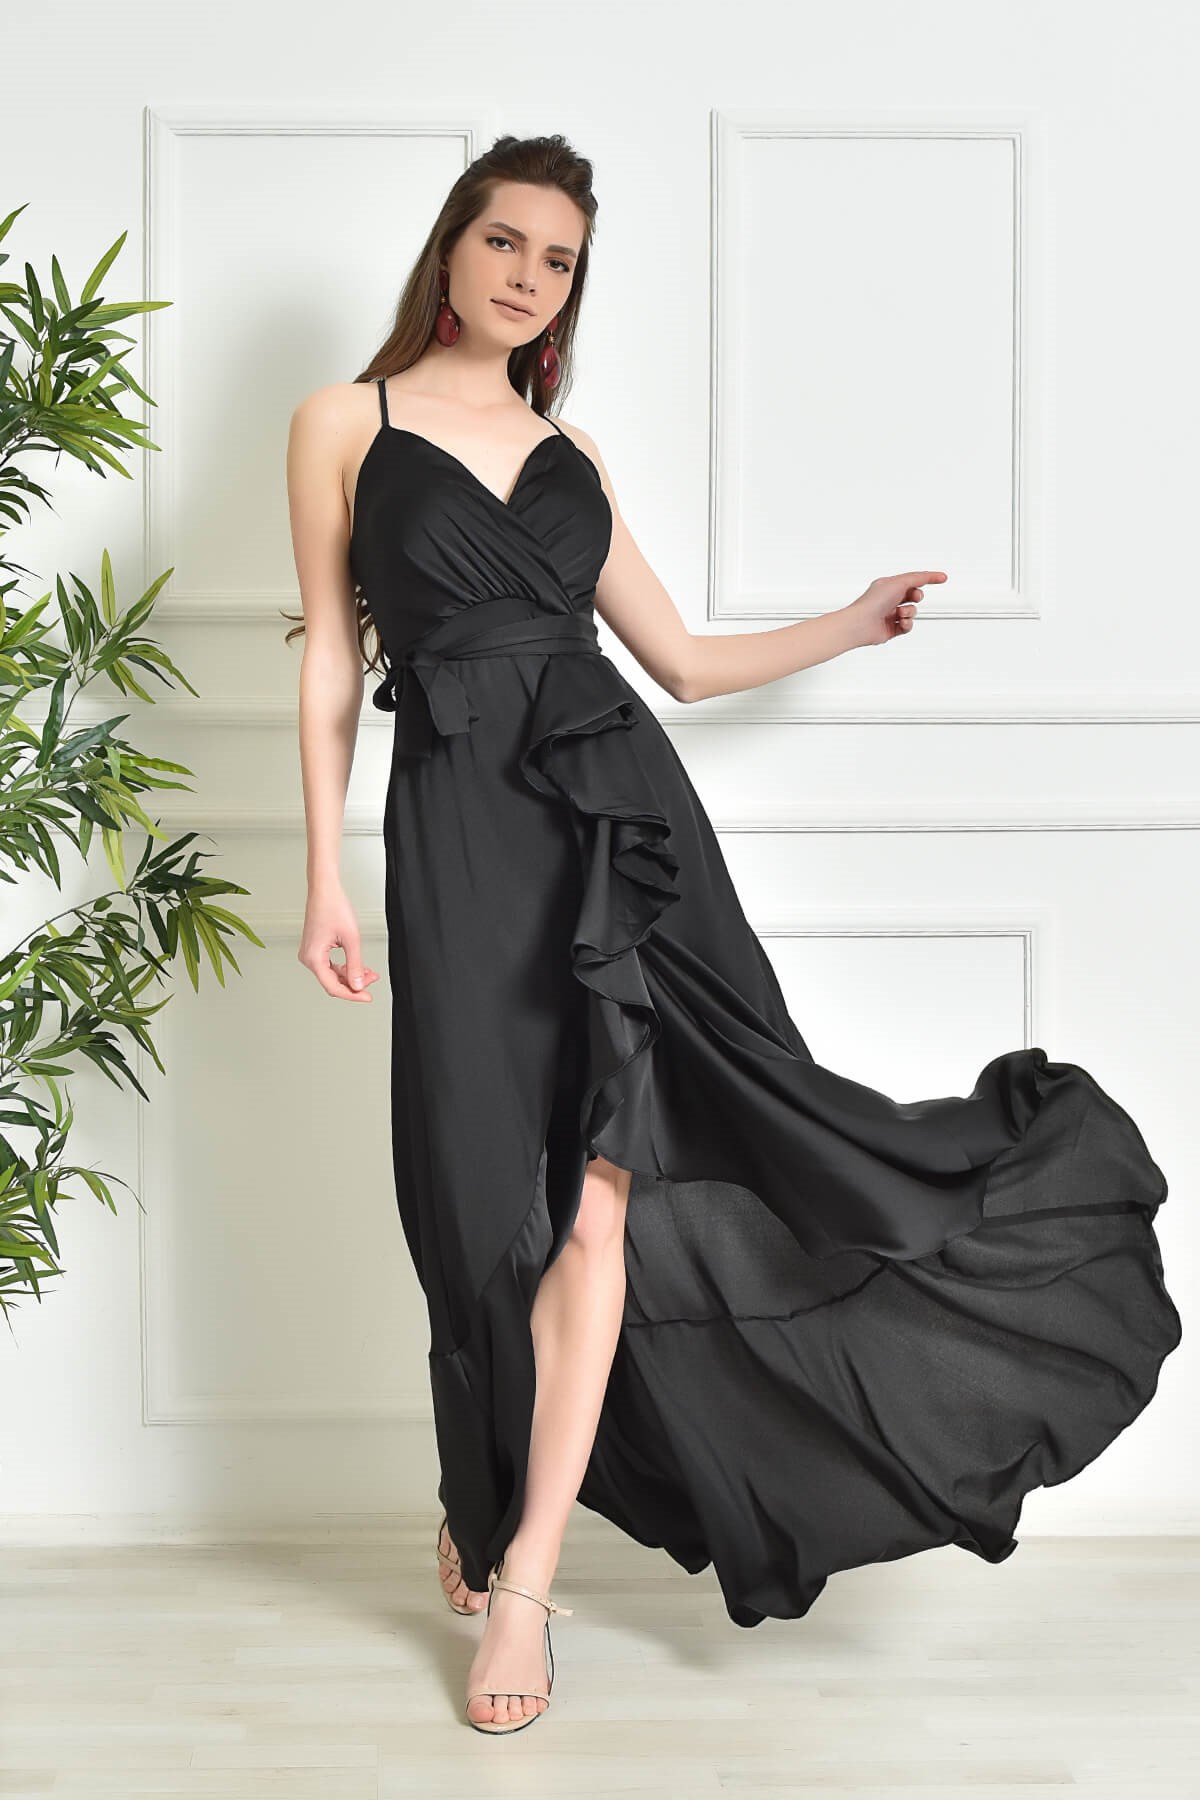 Siyah İp Askılı Saten Abiye Elbise - Moda Kapımda İle Kapınızda!